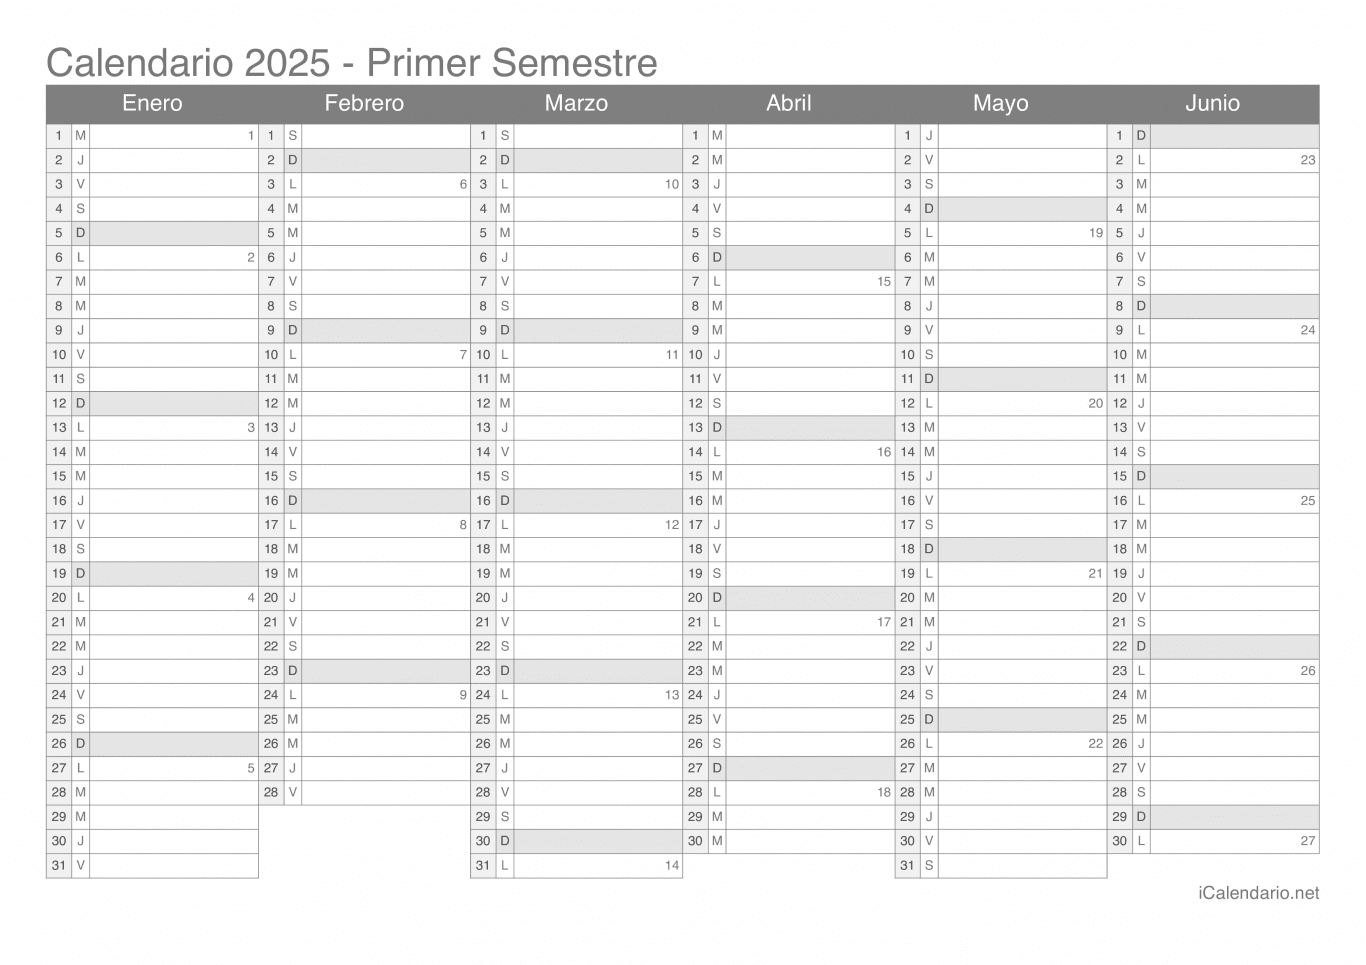 Calendario por semestre com números da semana 2025